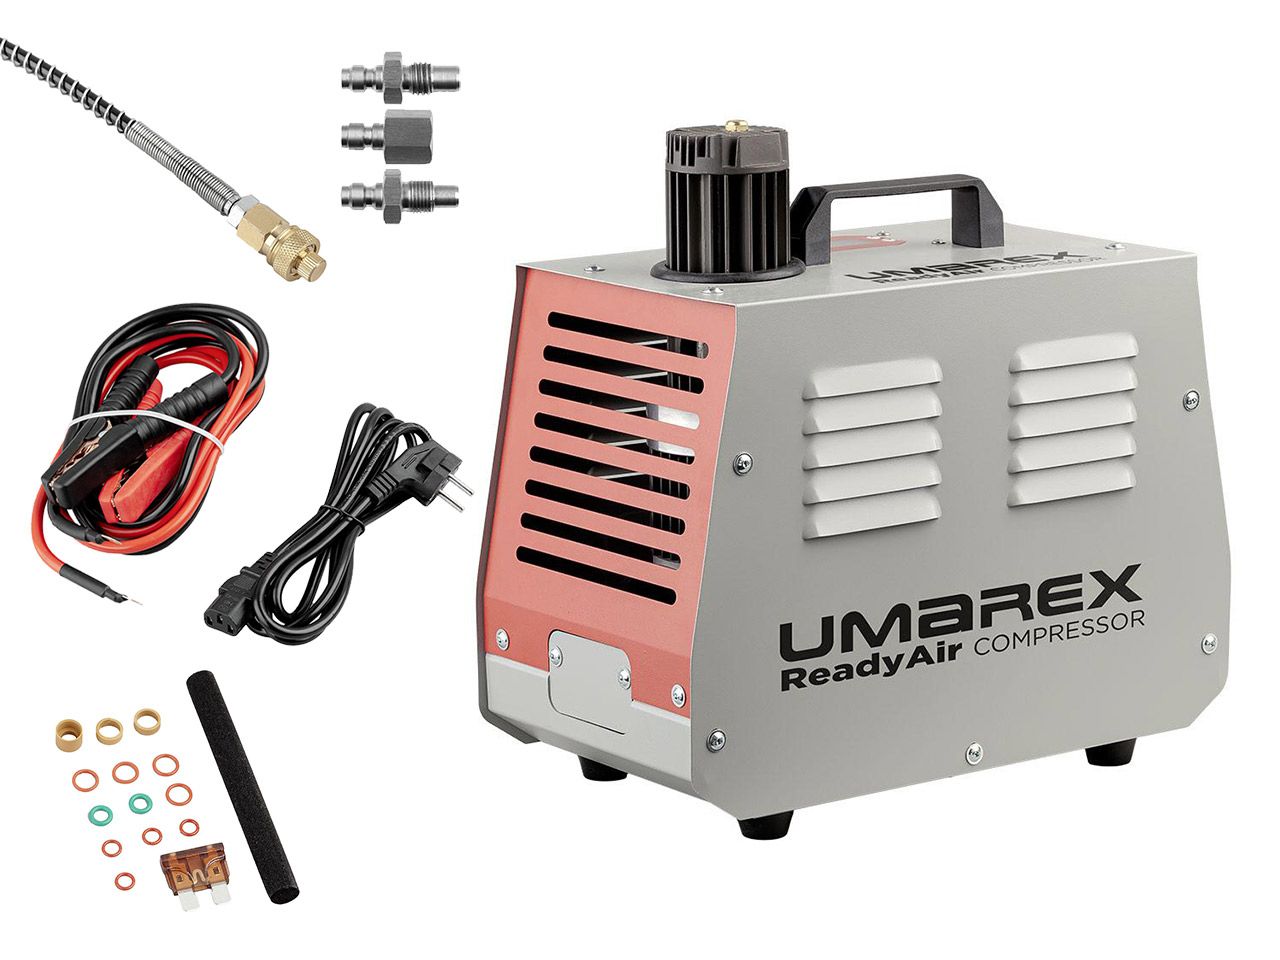 PCP Pressluft Kompressor Umarex ReadyAir Compressor bis 300 Bar inklusive ZubehĂ¶r